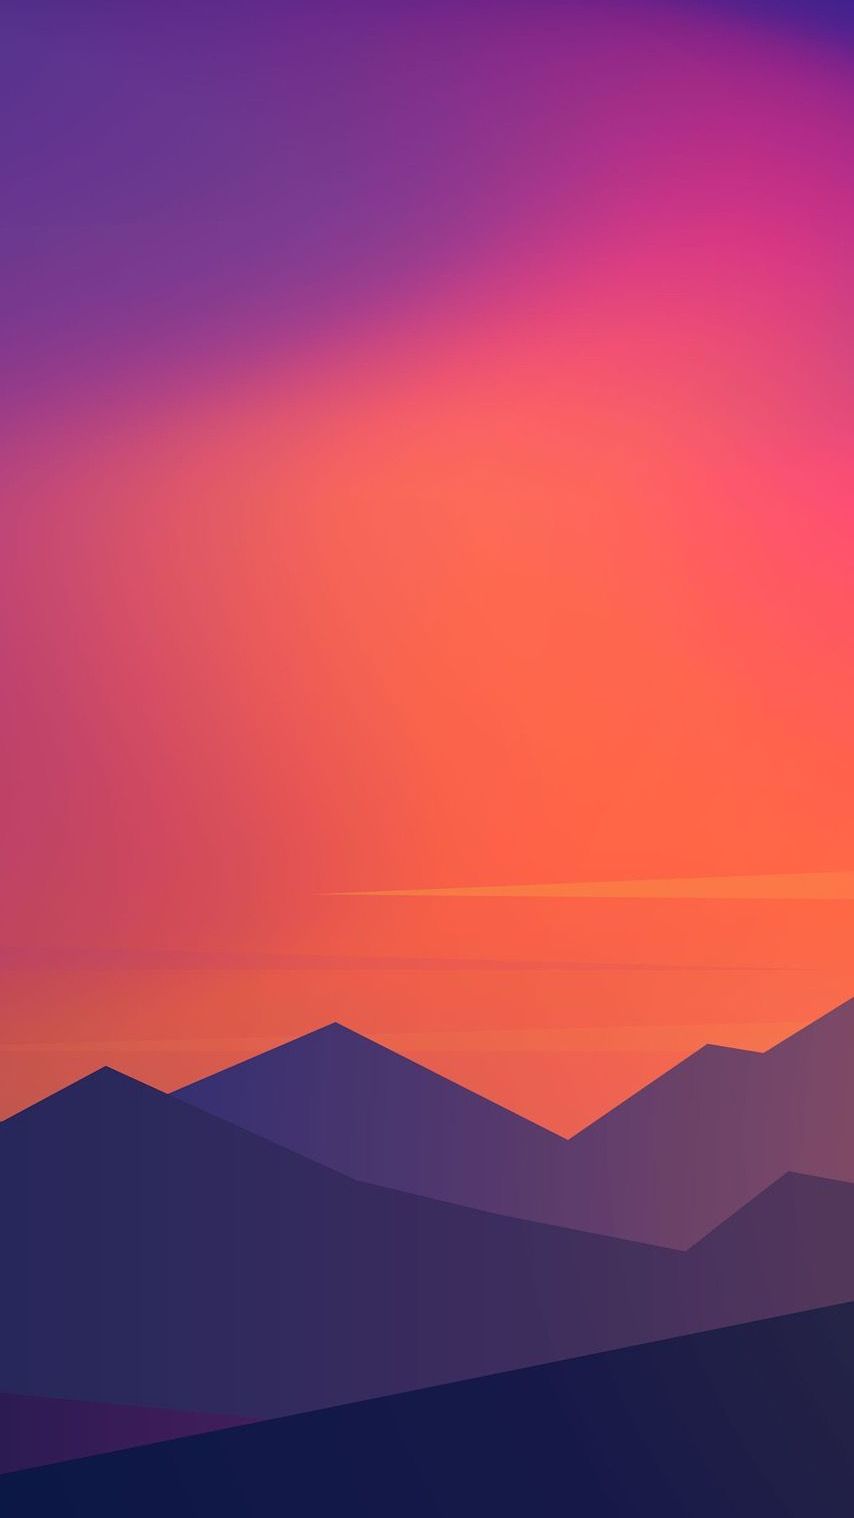 Sunset Minimal Mountains IPhone Wallpaper Wallpaper : iPhone Wallpaper